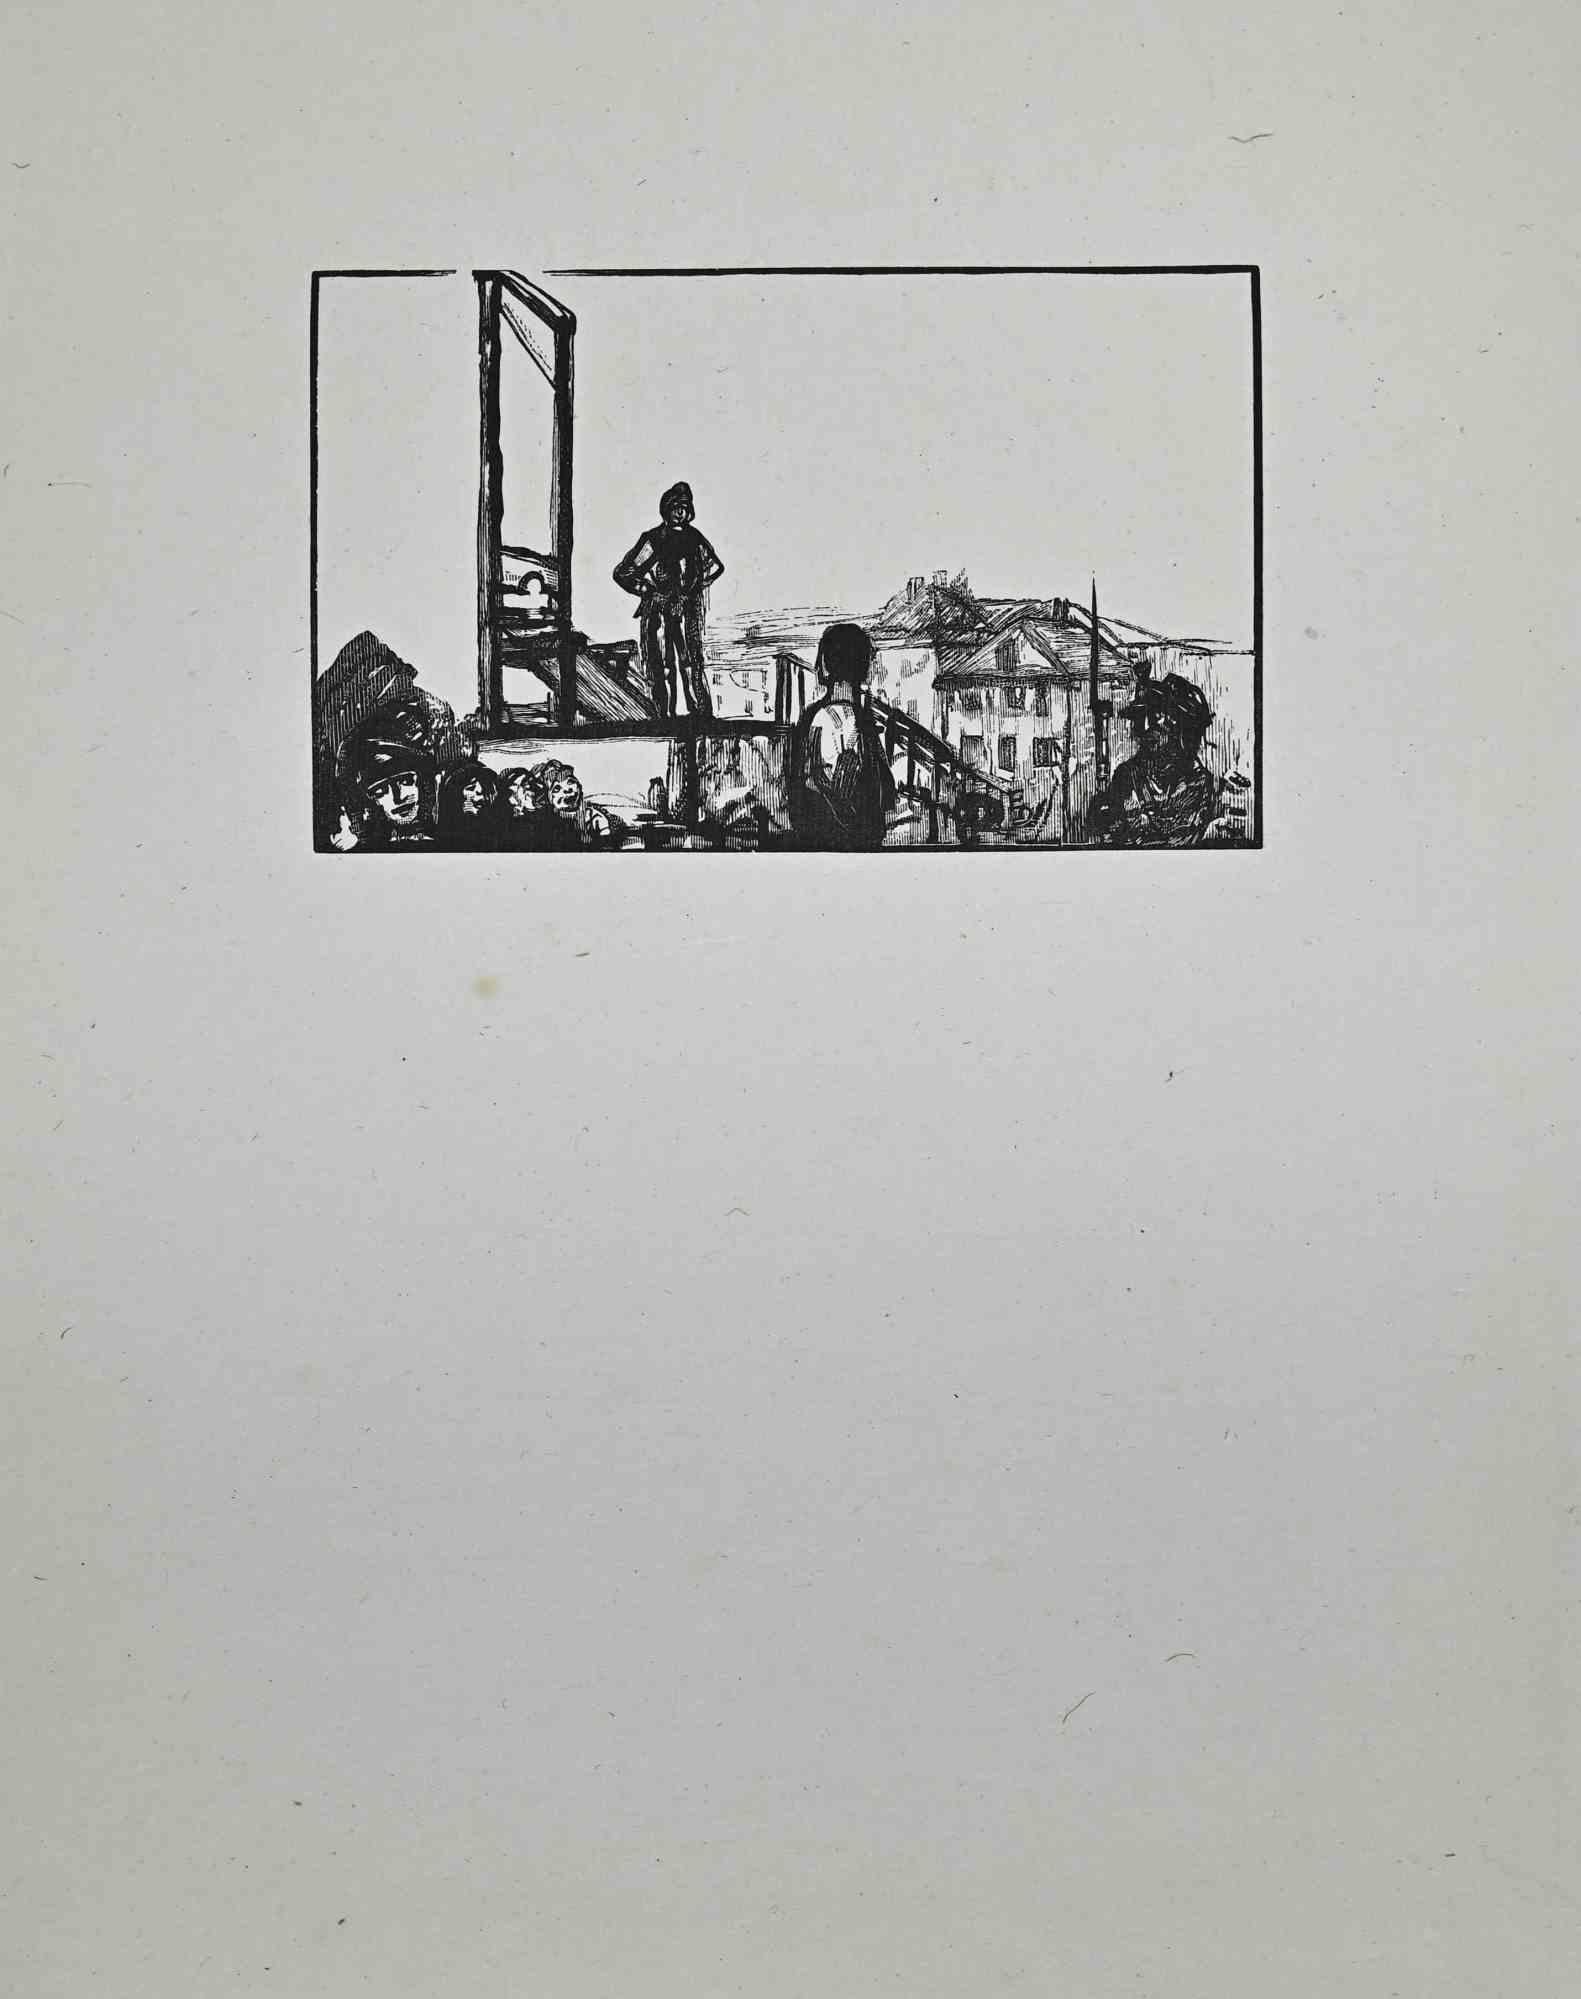 Le site  Exécution est une gravure sur bois originale sur papier couleur ivoire réalisée par Paul Baudier (1881-1962) dans les années 1930.

Bonnes conditions.

Paul Baudier, (né le 18 octobre 1881 à Paris et mort le 9 décembre 1962 à Châtillon),